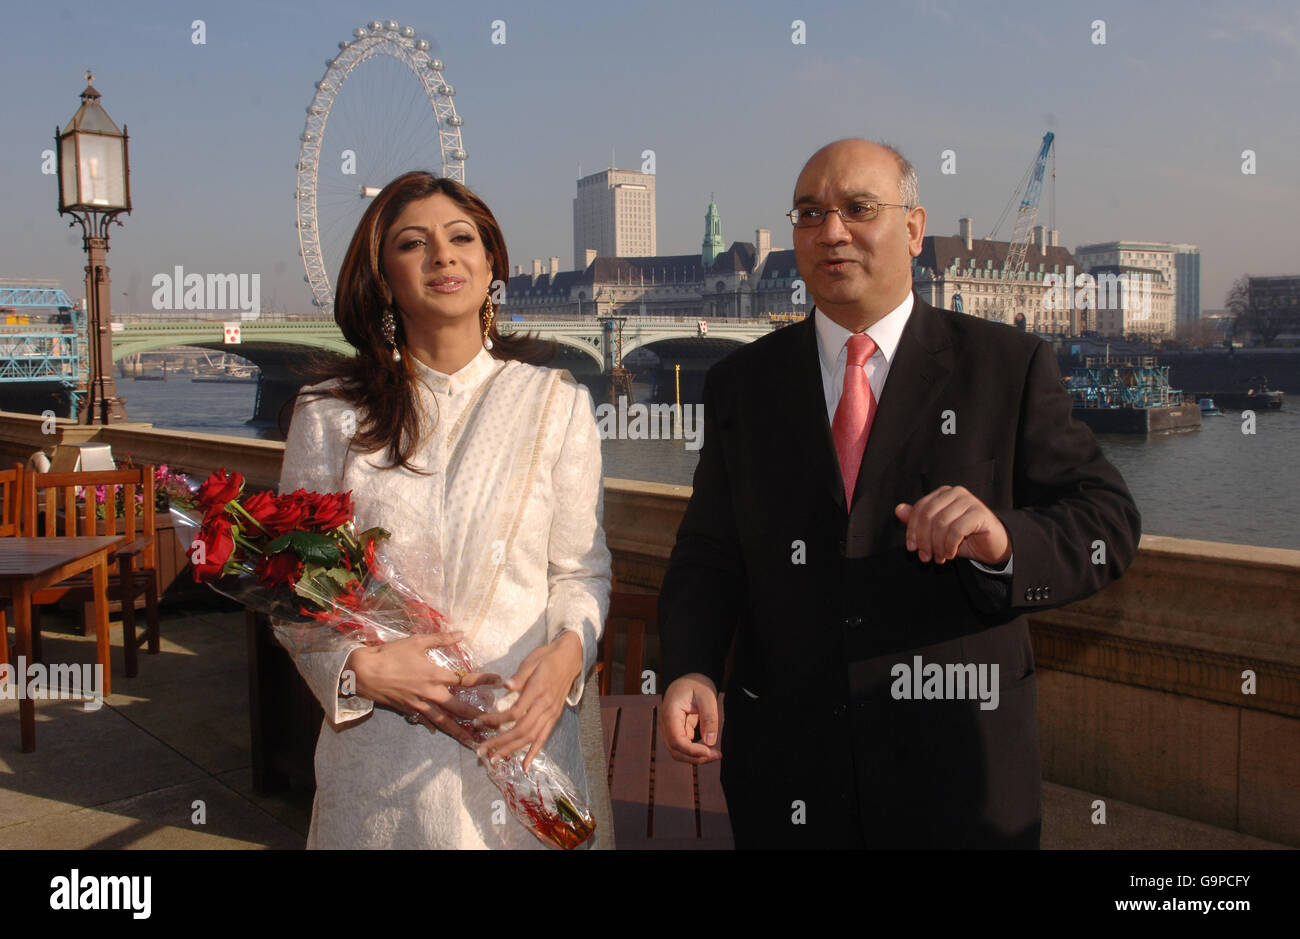 Shilpa Shetty, la célébrité du Big Brother, et Keith Vaz, député travailliste, lors d'une visite au Parlement de Londres. Banque D'Images